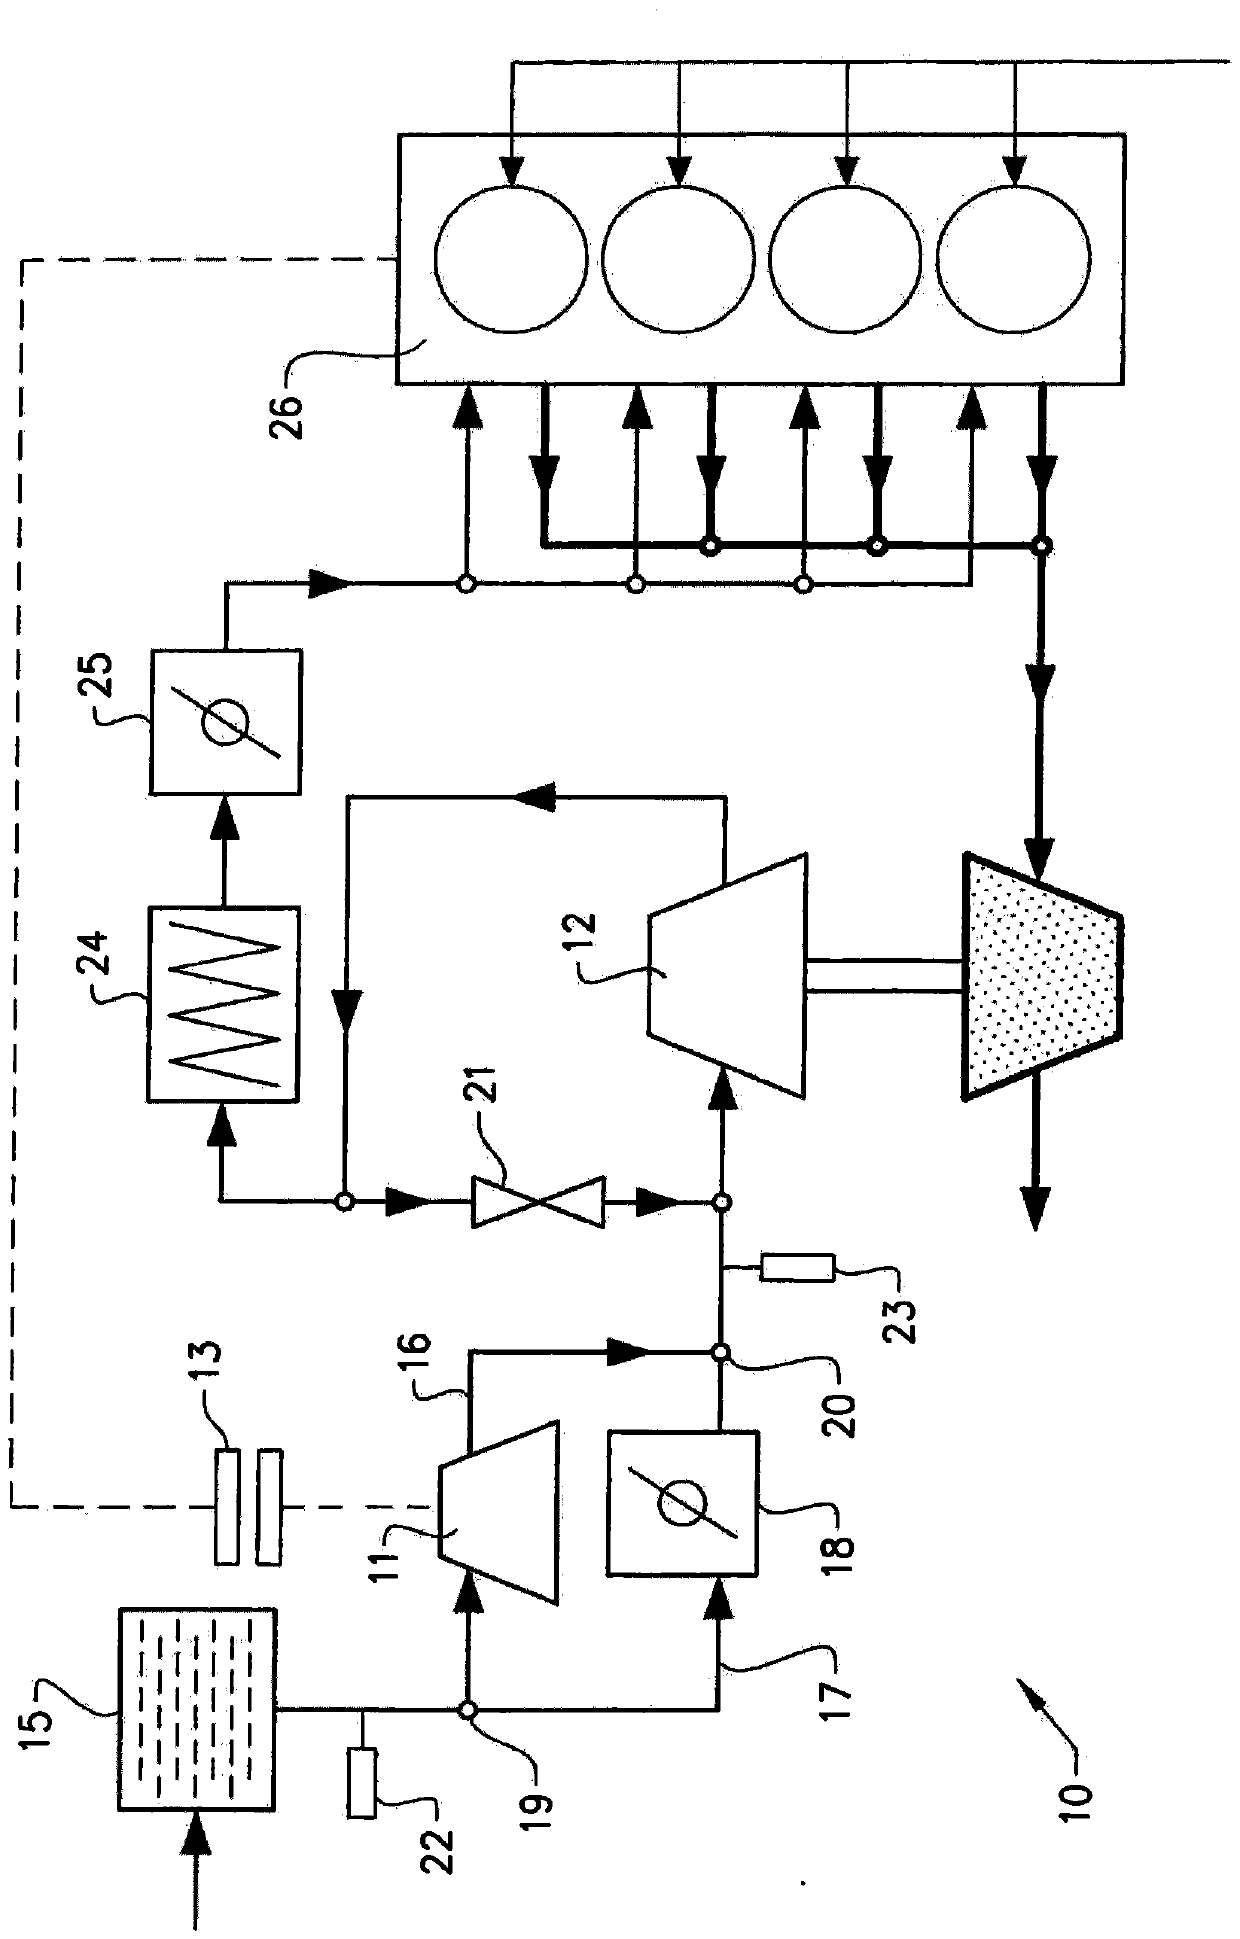 Compressor pre-rotation control method